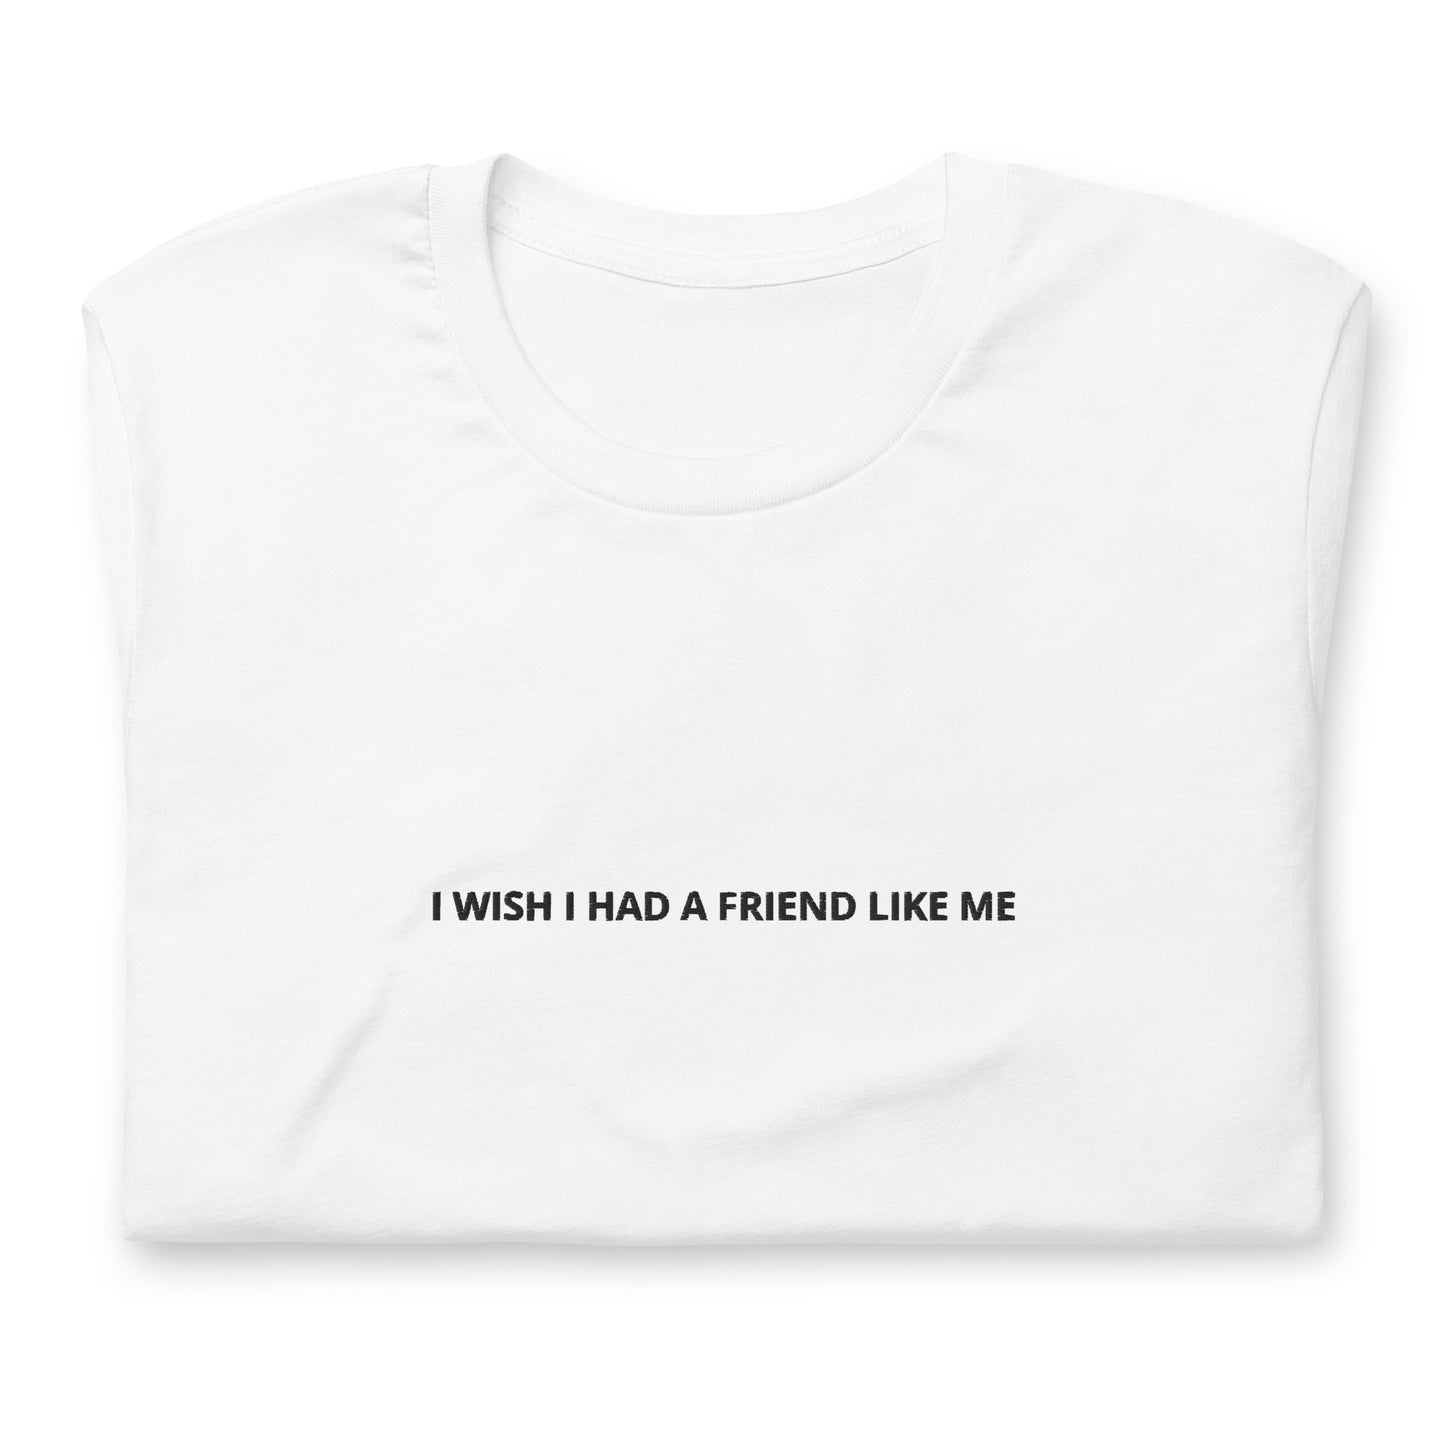 I WISH I HAD A FRIEND LIKE ME - embroidered T-shirt